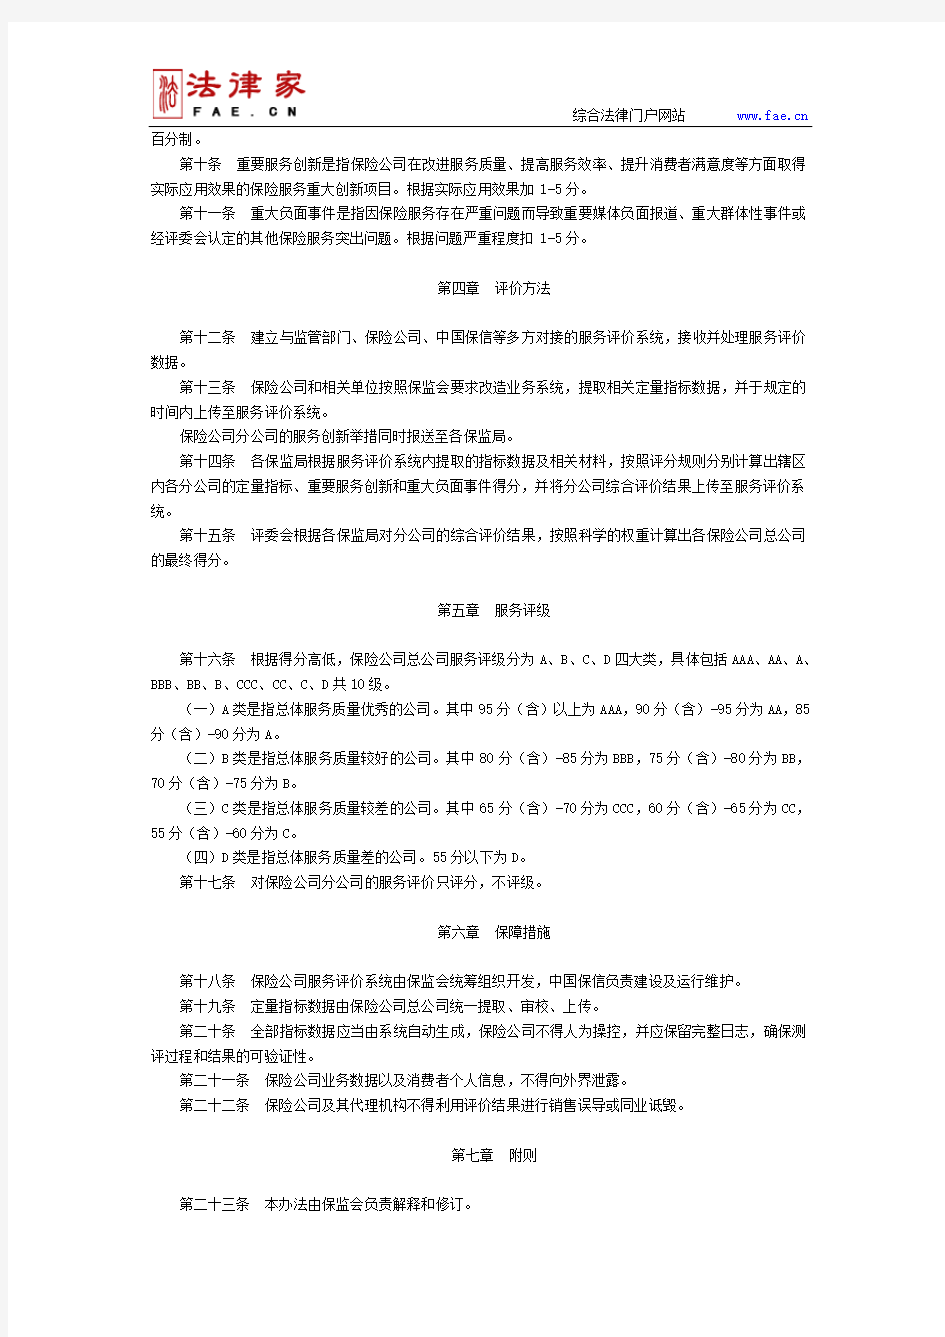 中国保监会关于印发《保险公司服务评价管理办法(试行)》的通知-国家规范性文件、